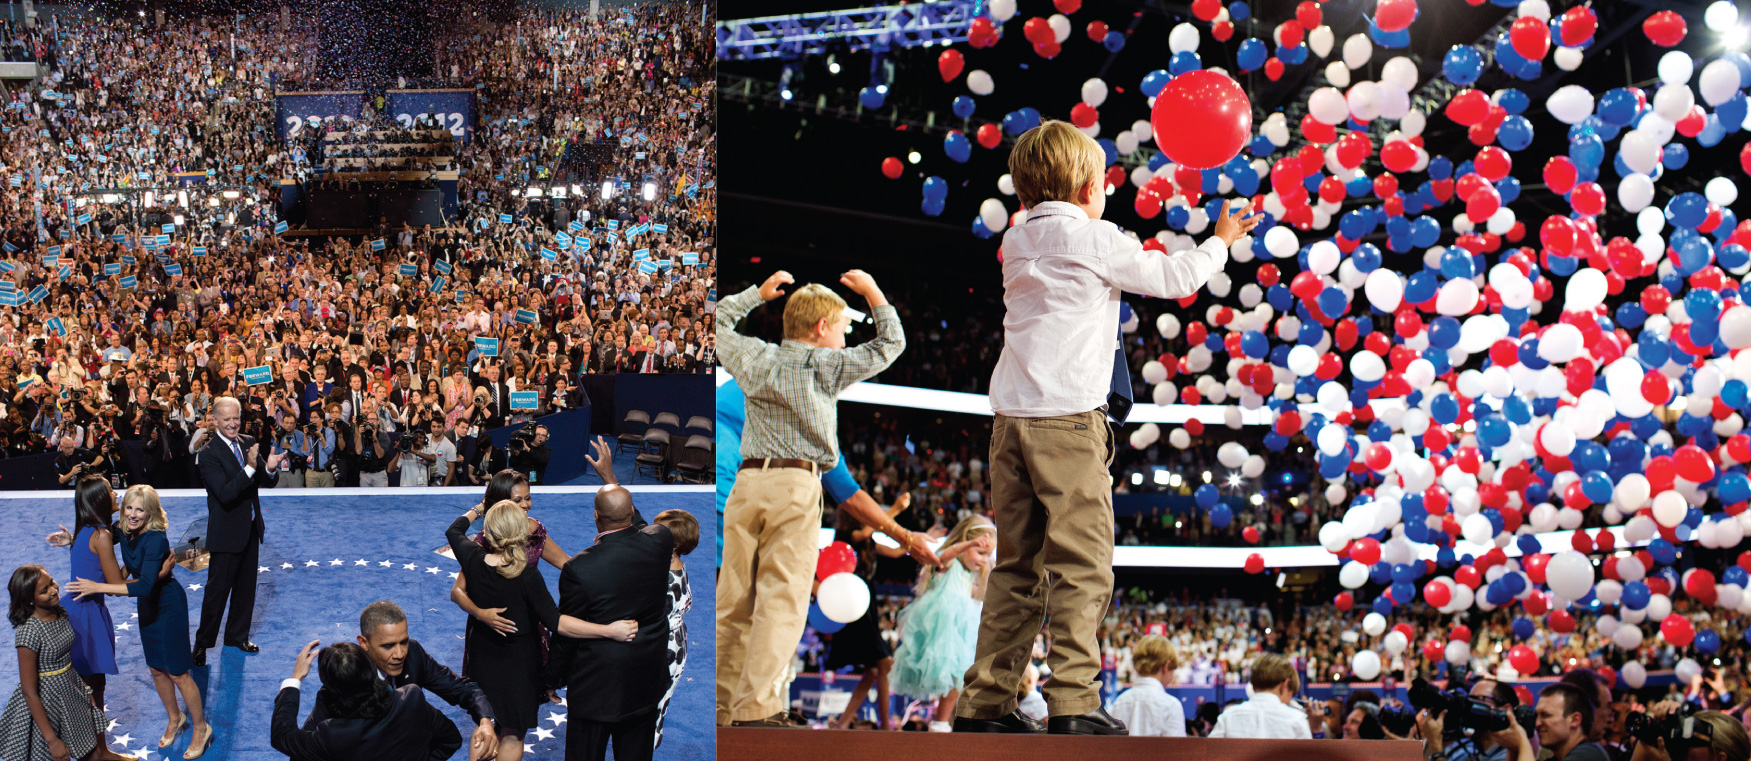 الصورة على اليسار هي لأوباما وعائلته أمام حشد كبير من الناس. الصورة على اليسار هي لعدة أطفال على خشبة المسرح أمام حشد كبير من الناس. يسقط عدد كبير من البالونات من الأعلى.